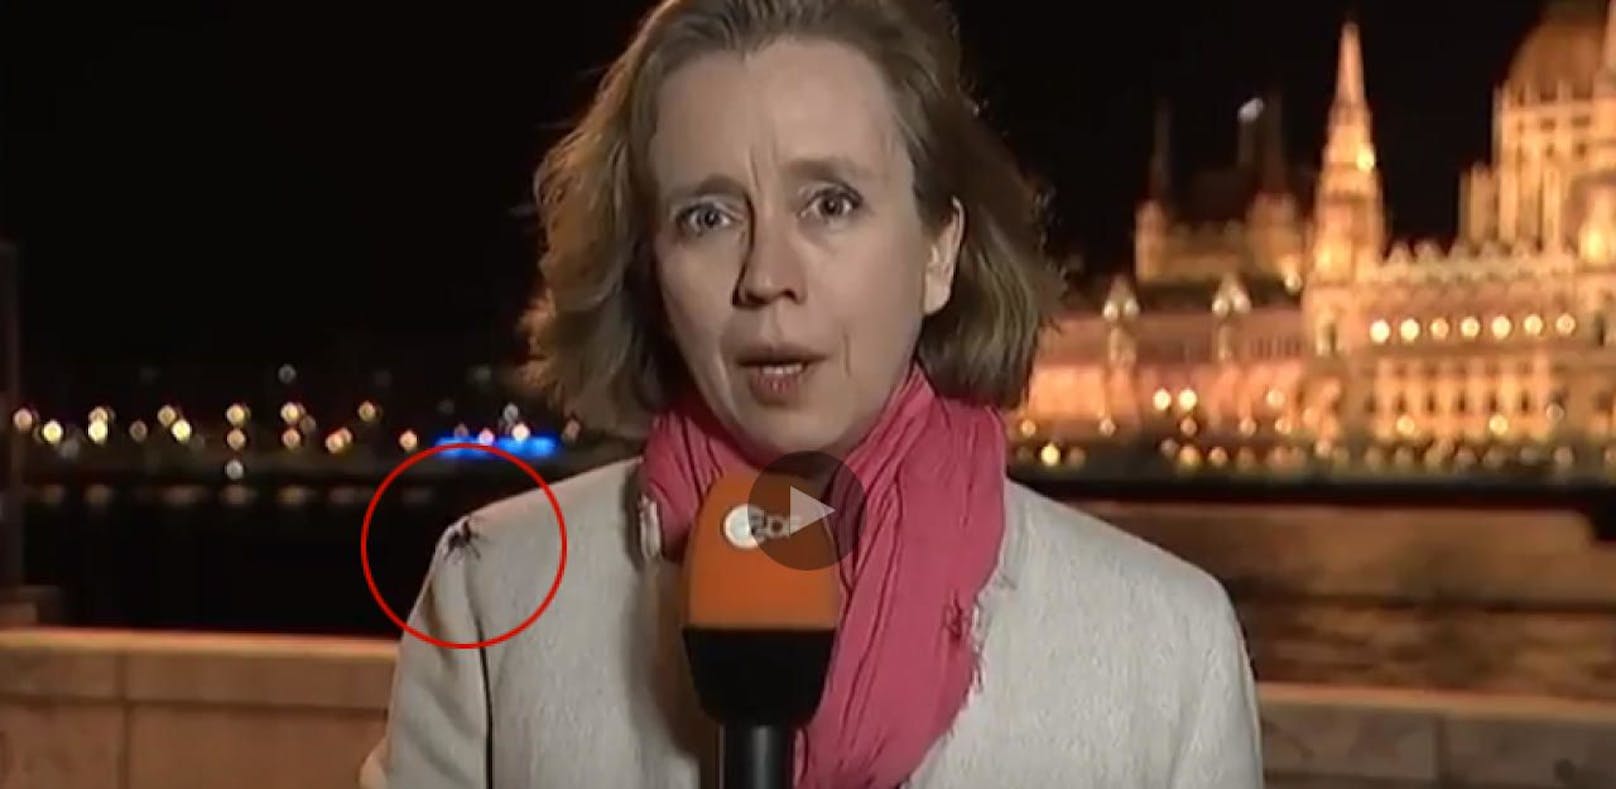 Monster-Spinne krabbelt auf ZDF-Reporterin